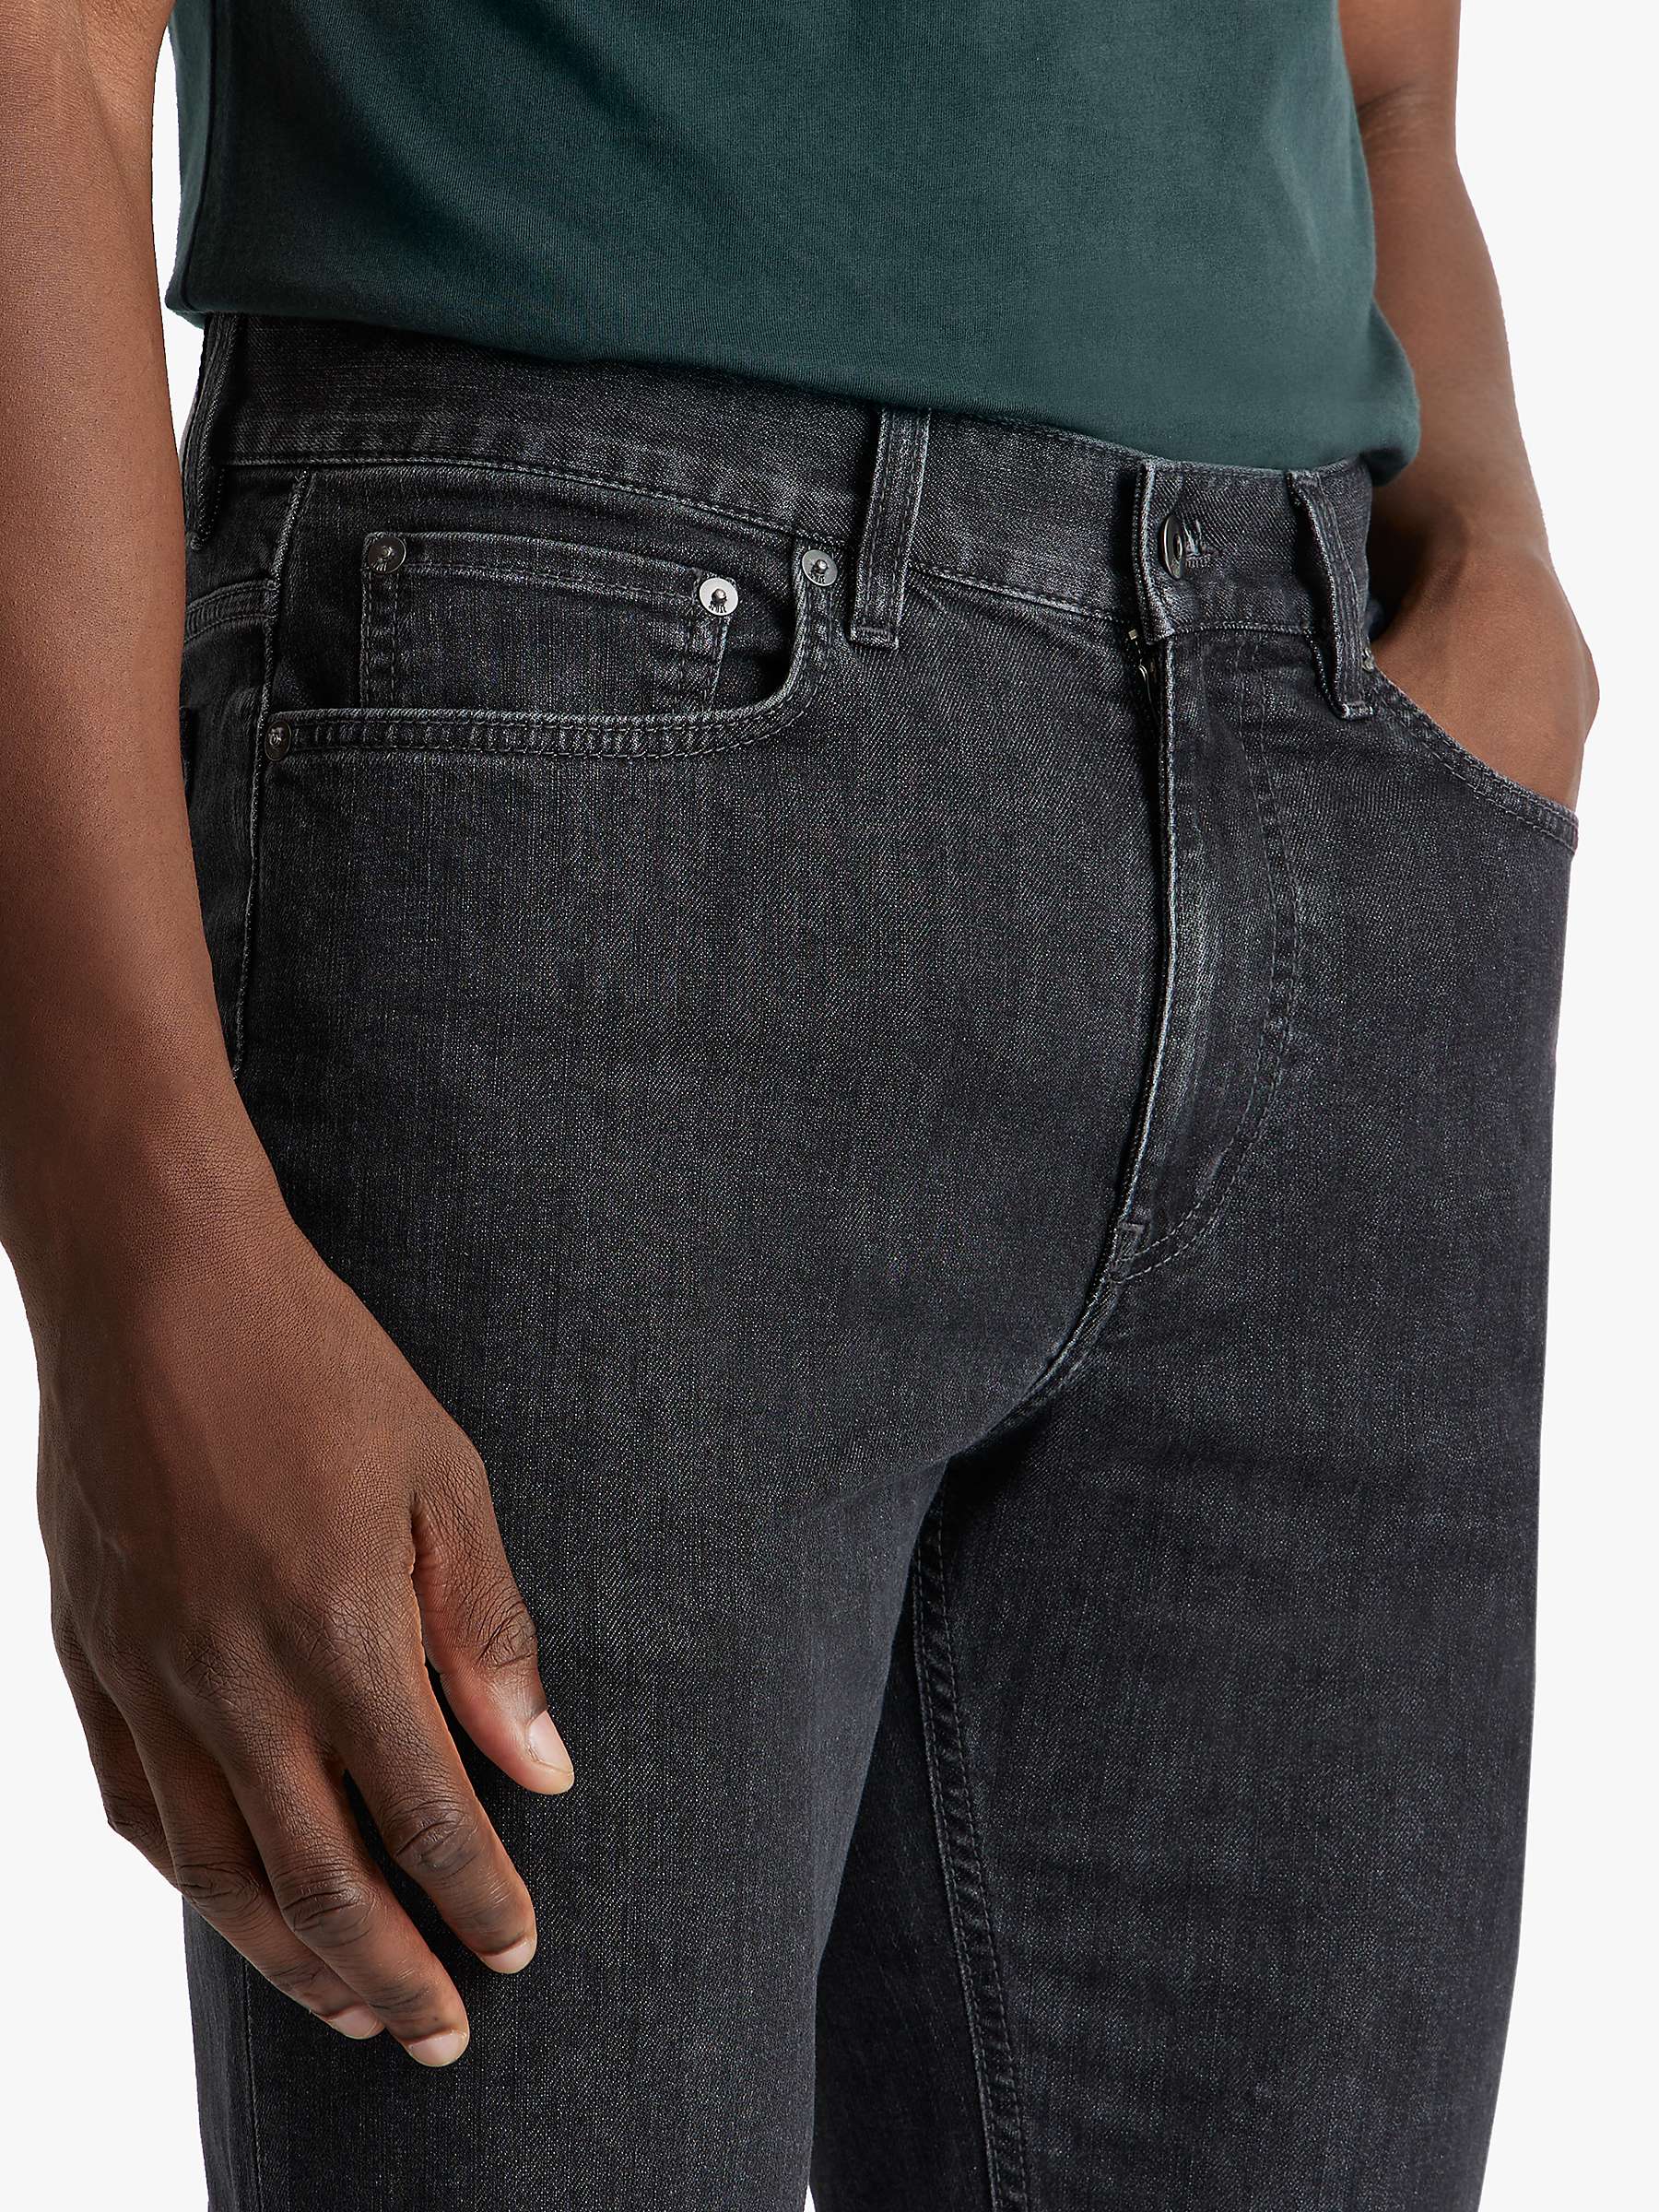 Buy SPOKE 12oz Denim Broad Thigh Jeans Online at johnlewis.com